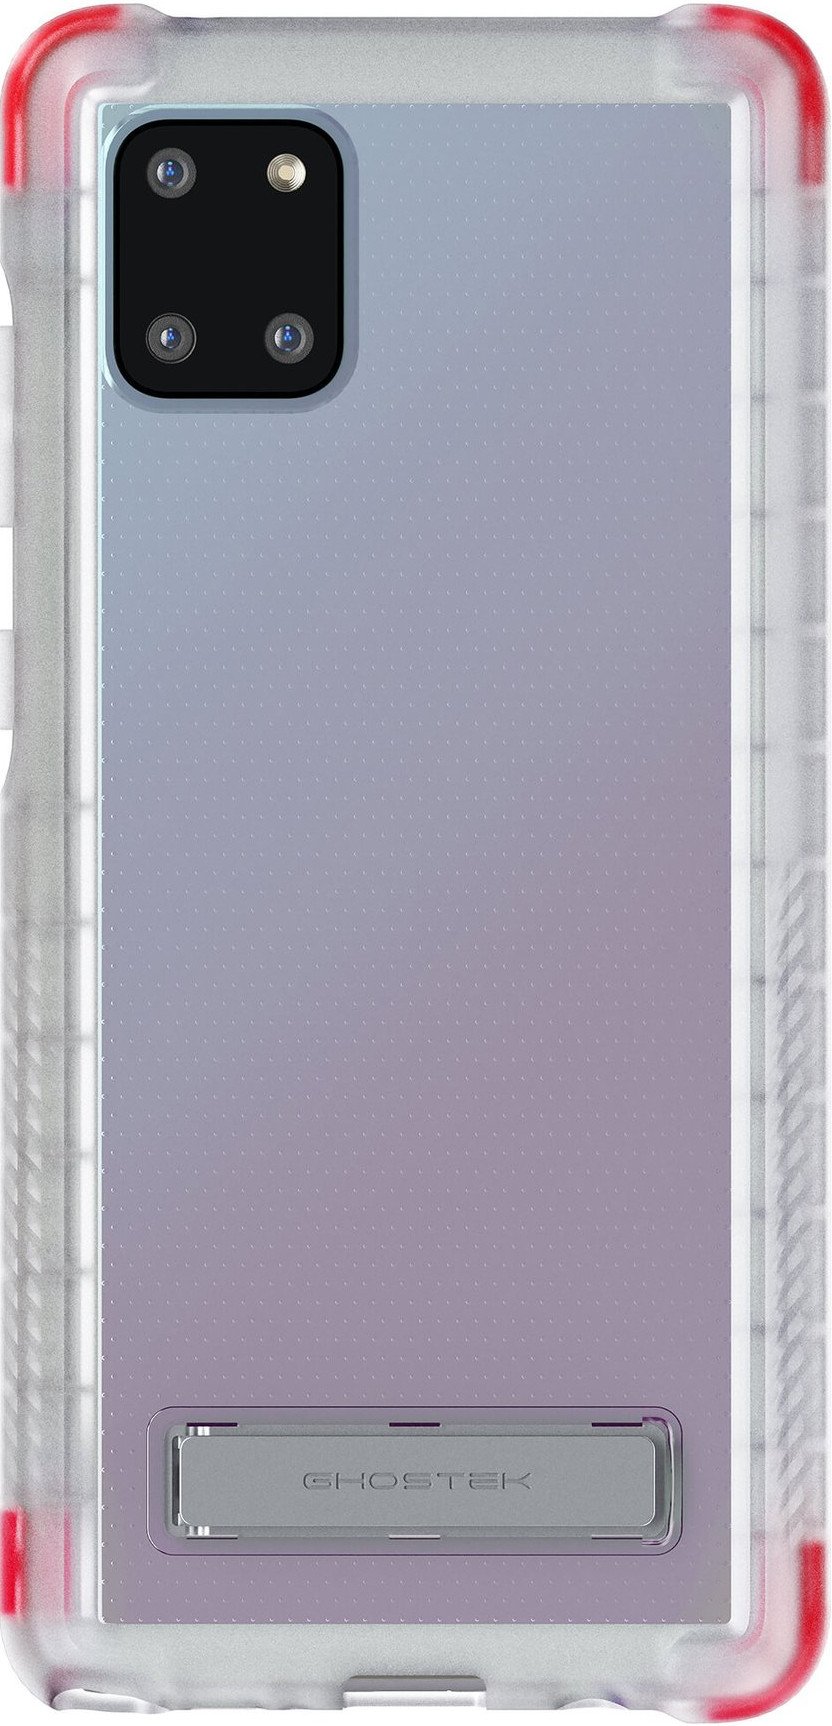 Ghostek Covert Galaxy Note 10 Lite Case Render